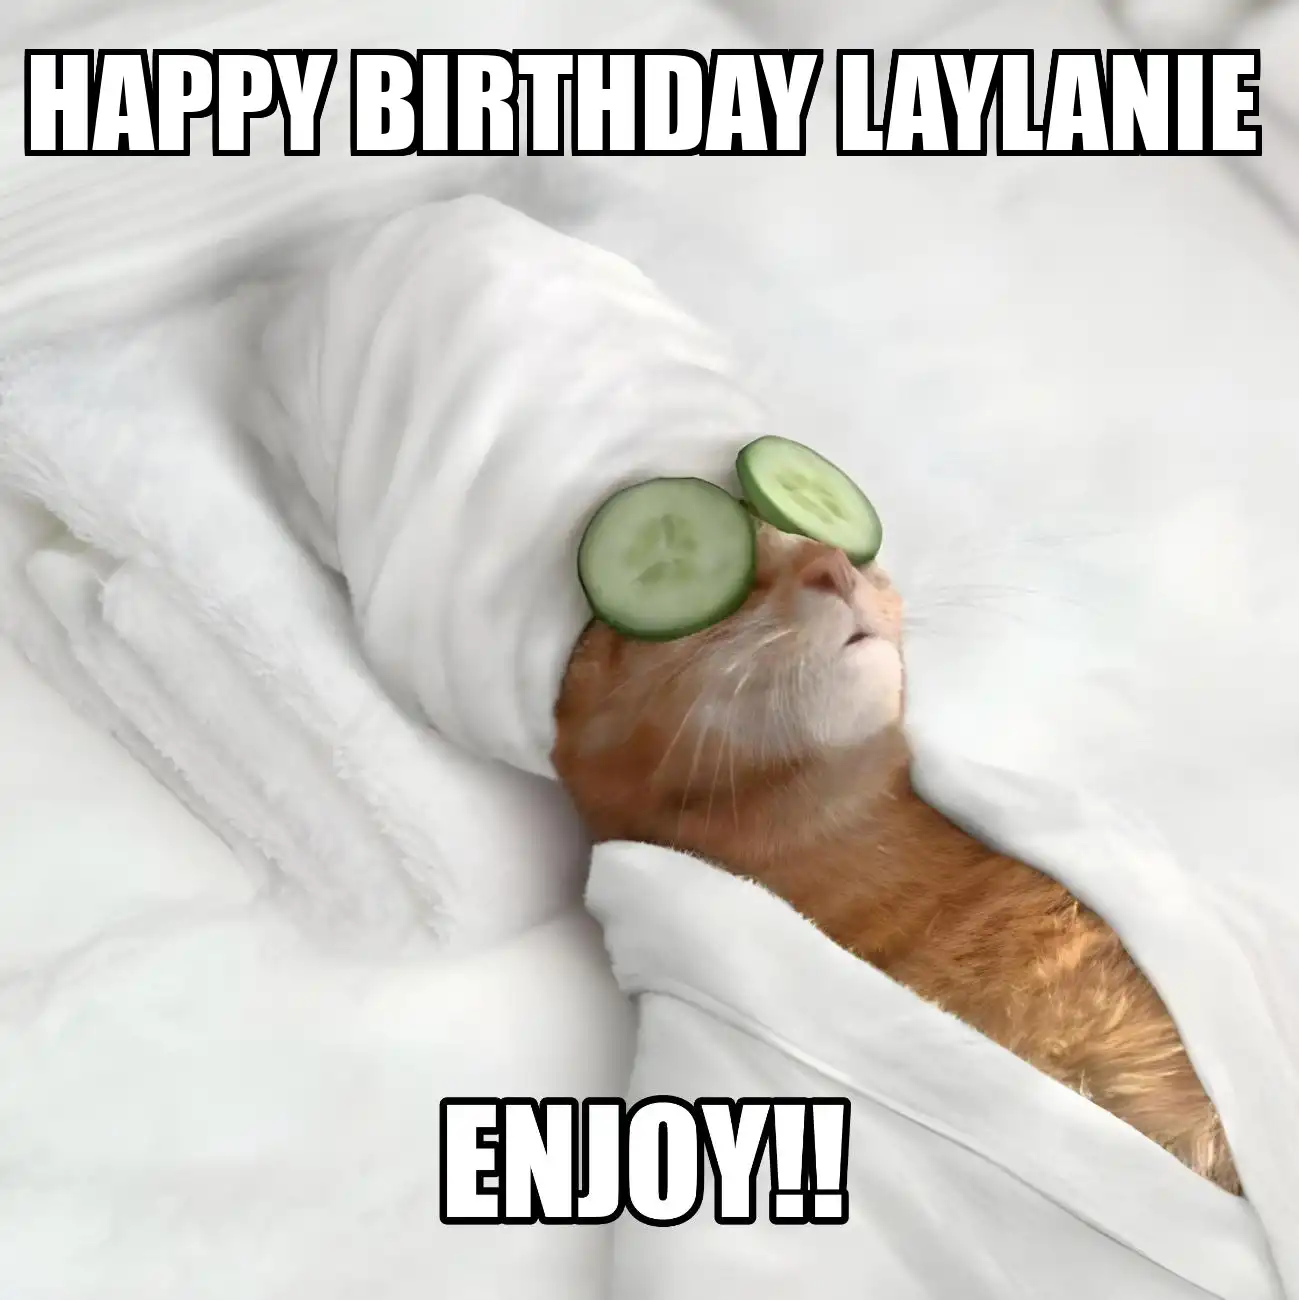 Happy Birthday Laylanie Enjoy Cat Meme